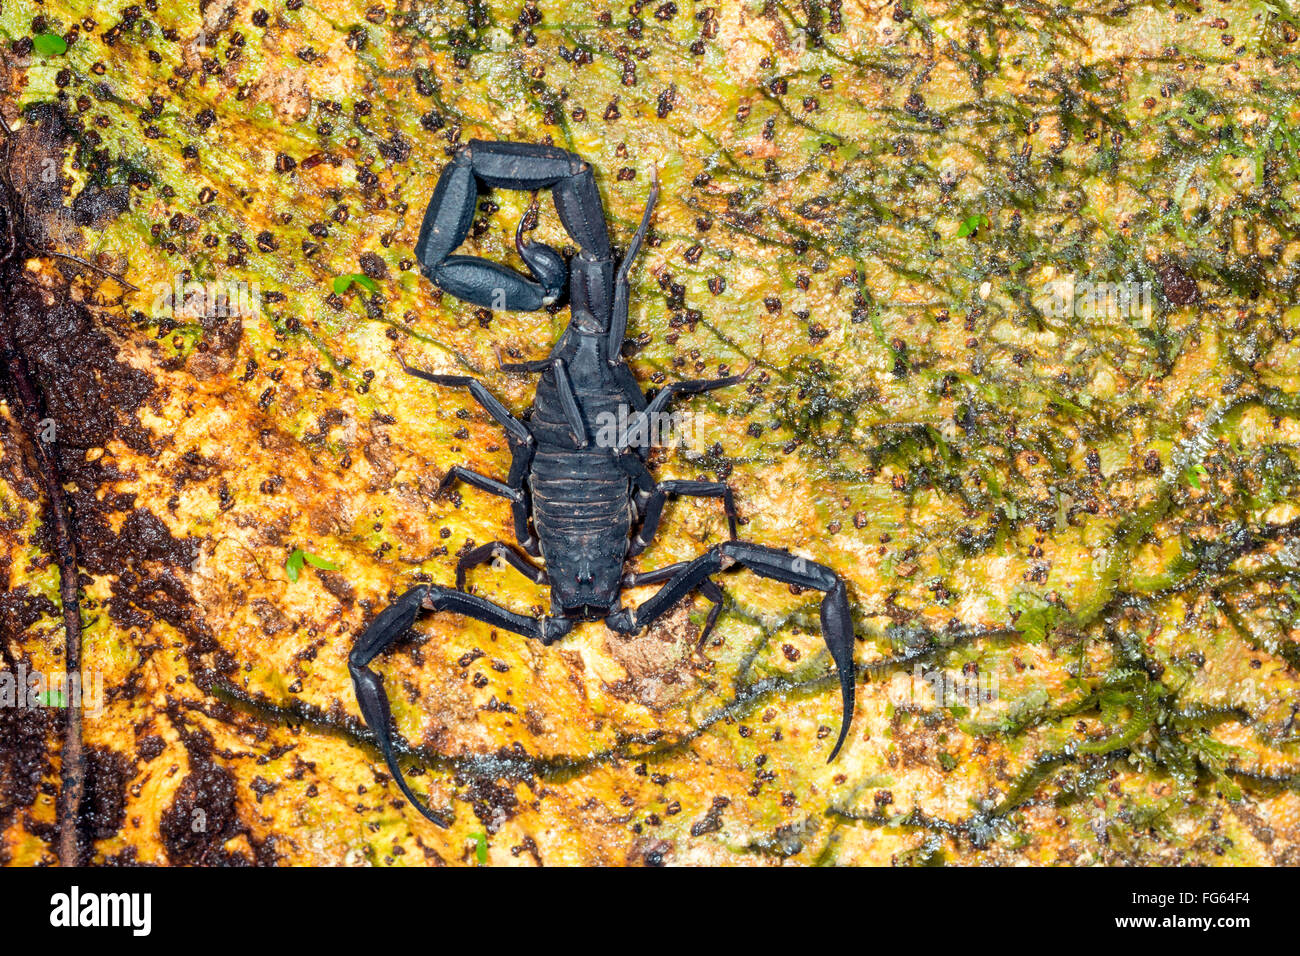 Black Scorpion Tityus équatorienne (asthenes) sur un tronc d'arbre de la forêt tropicale en Amazonie équatorienne Banque D'Images